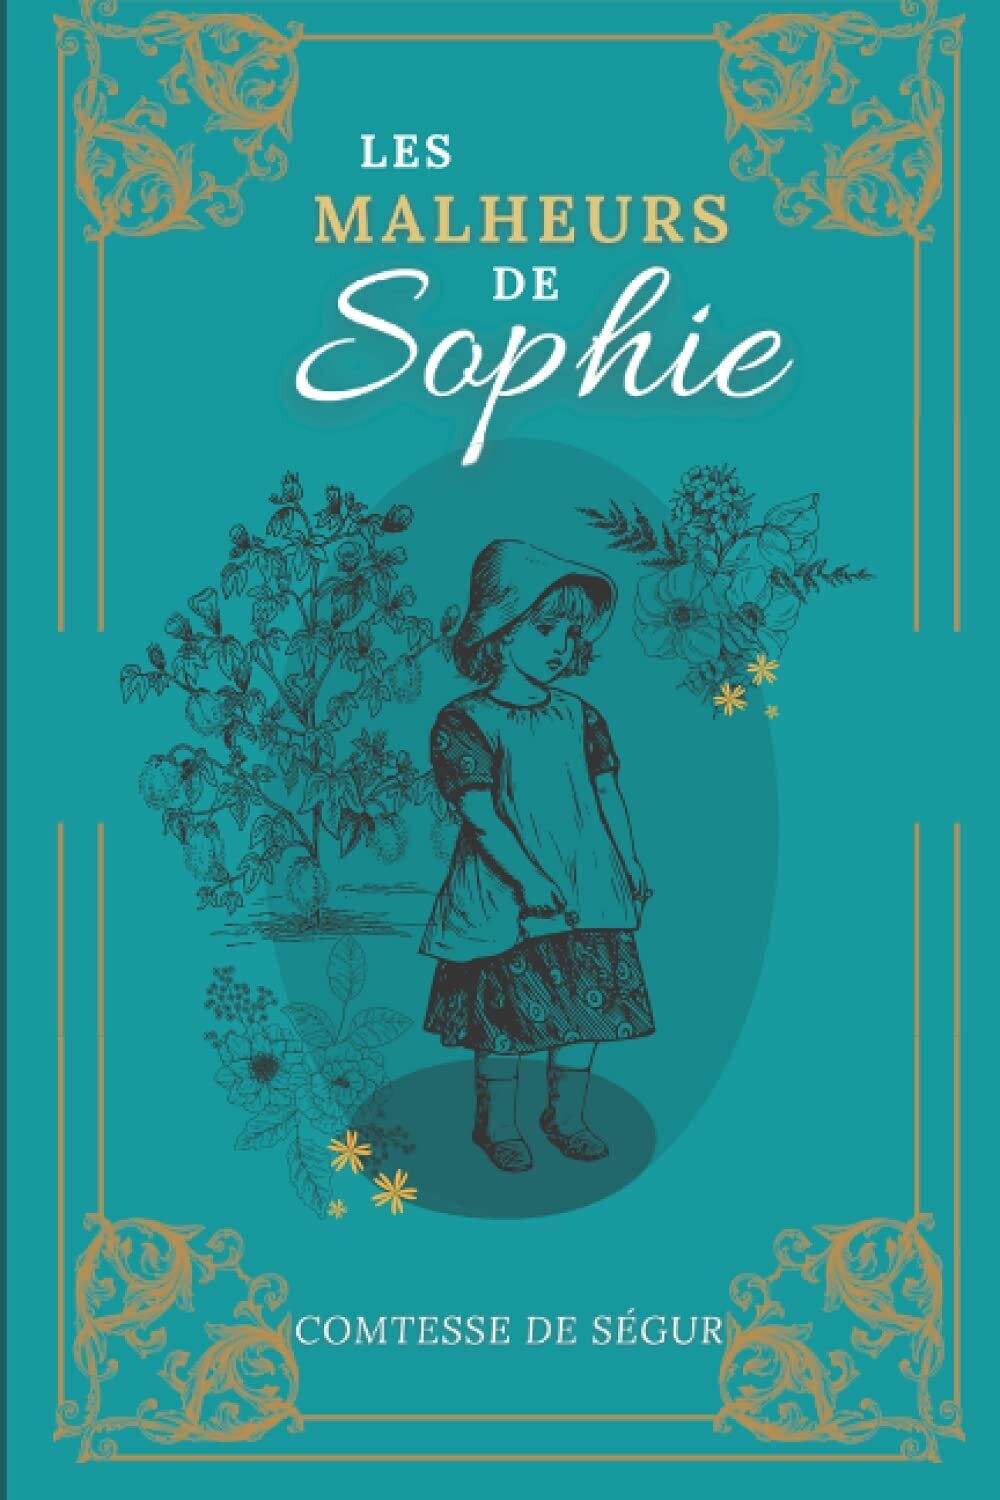 Les Malheurs de Sophie: De la Comtesse de S?gur | Texte int?gral avec biographie